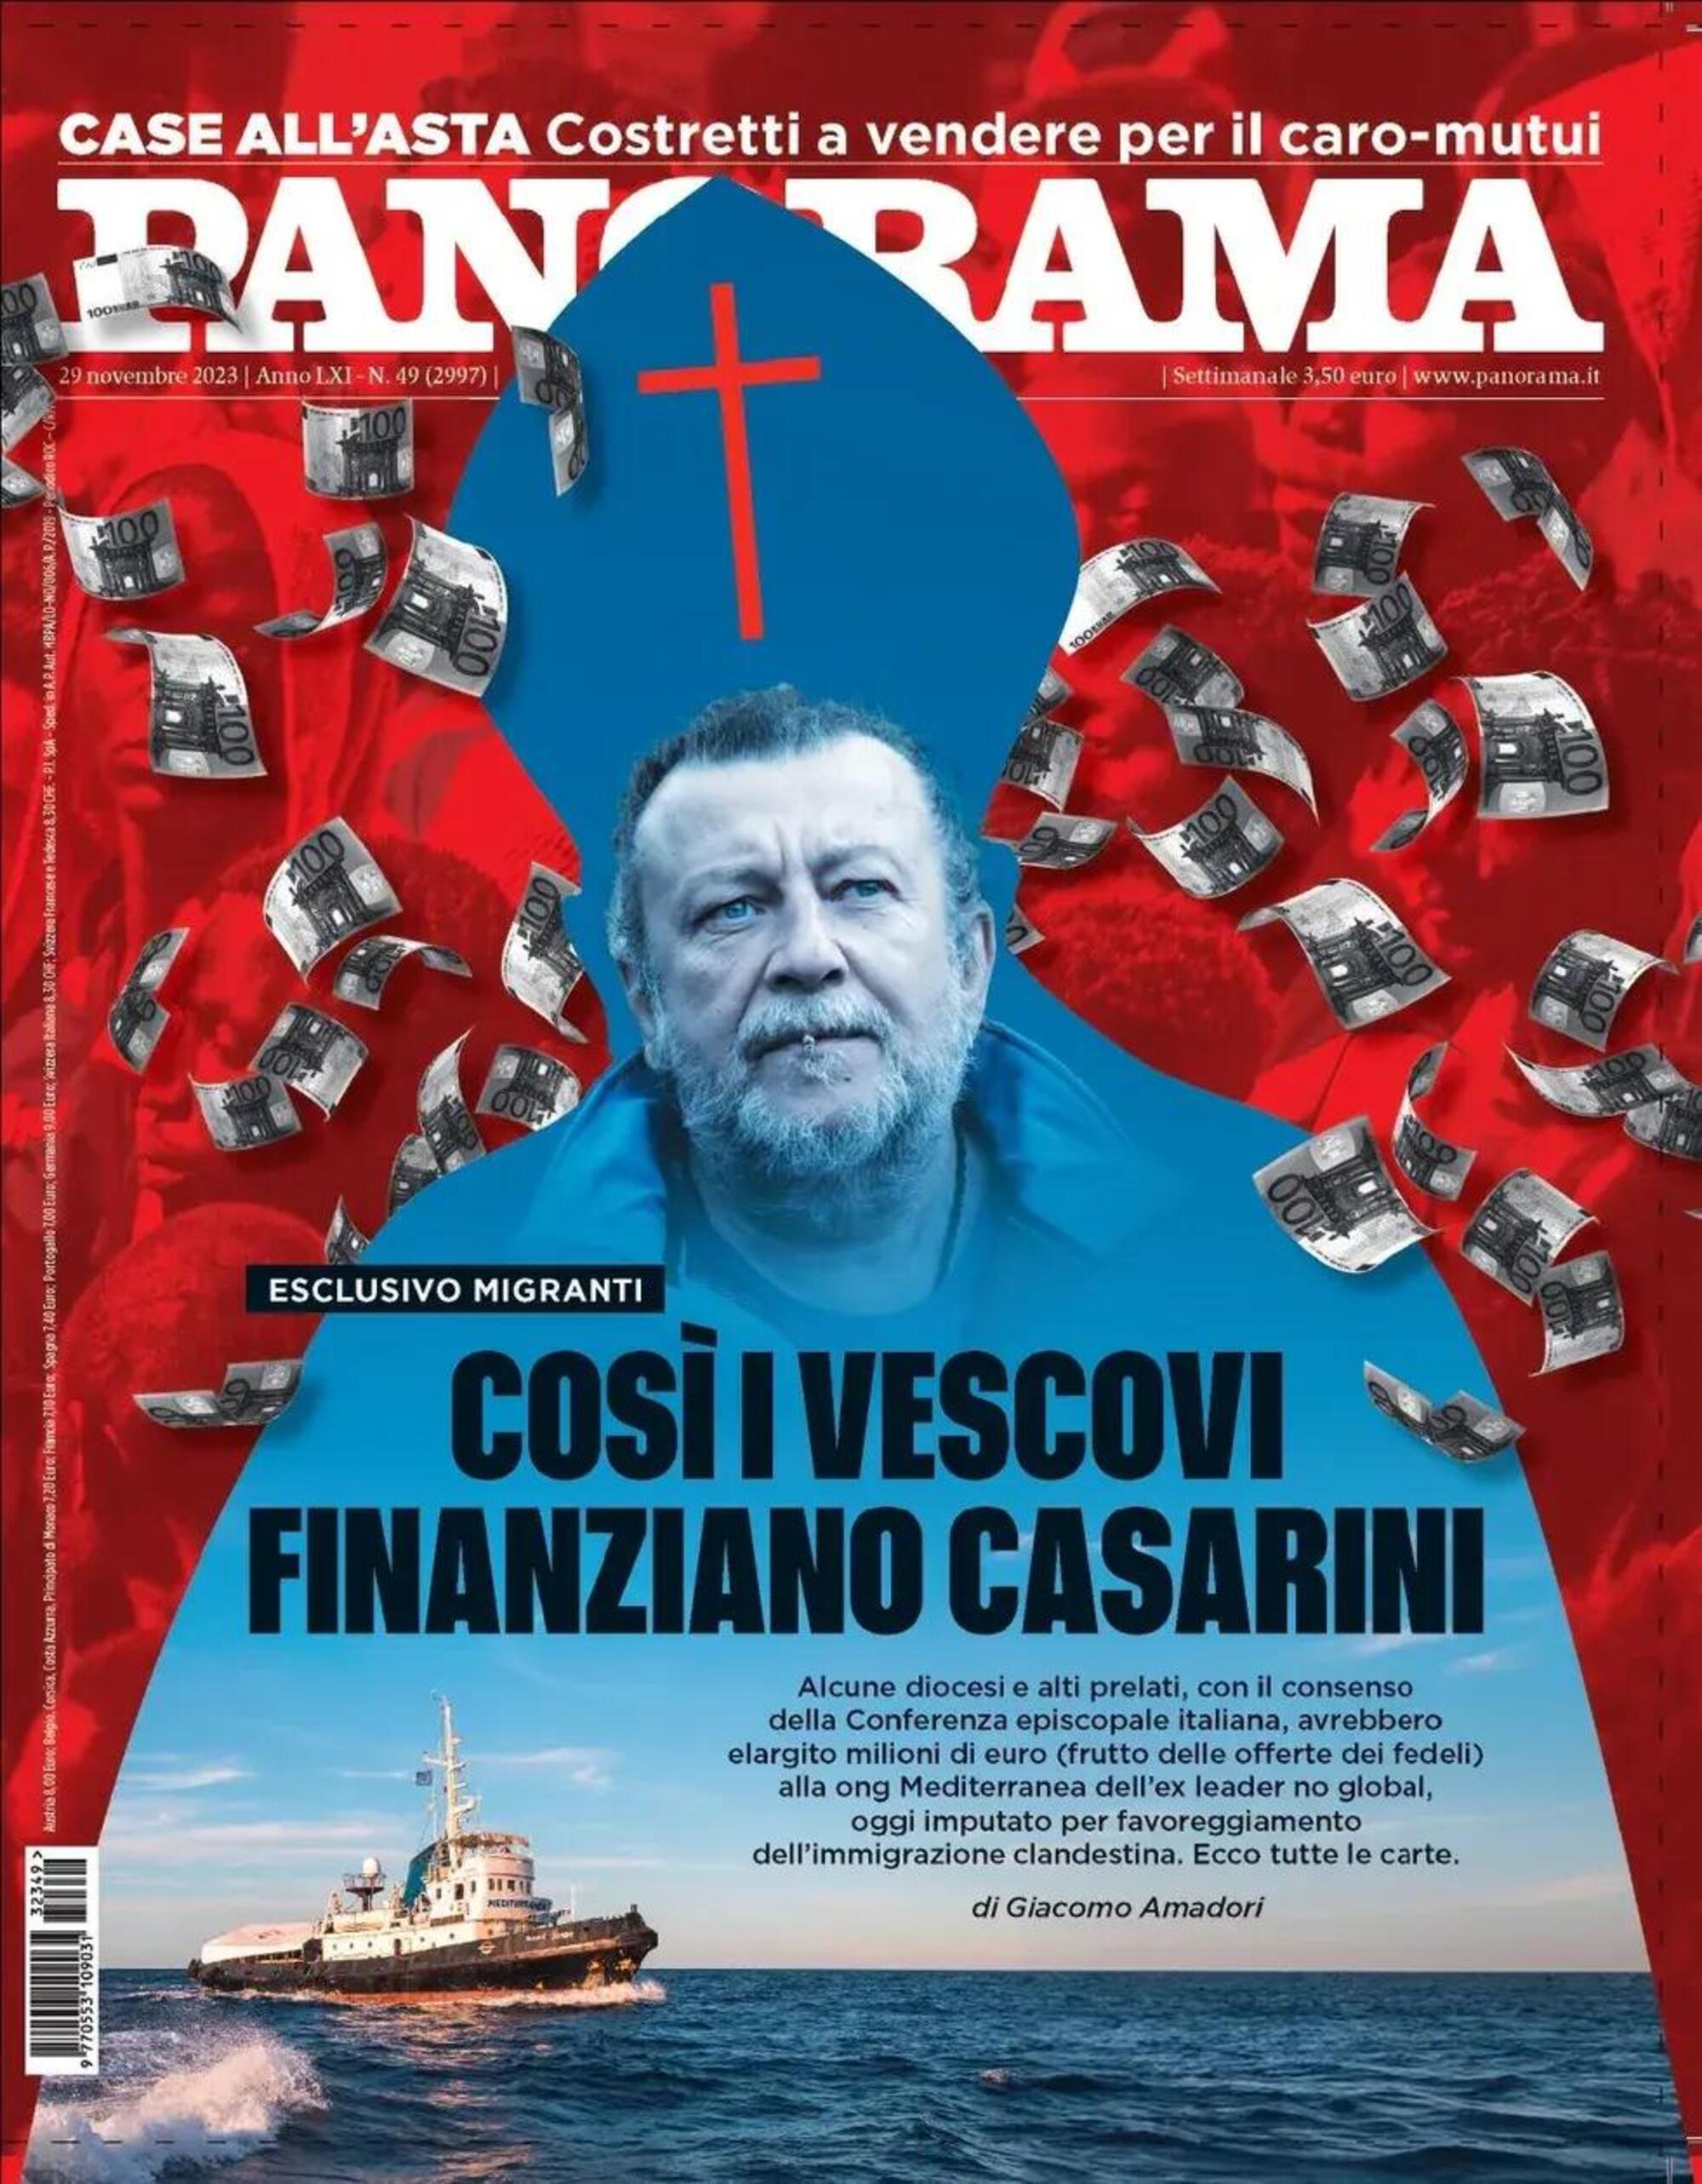 La copertina di Panorama su Luca Casarini e i presunti rapporti con i vescovi